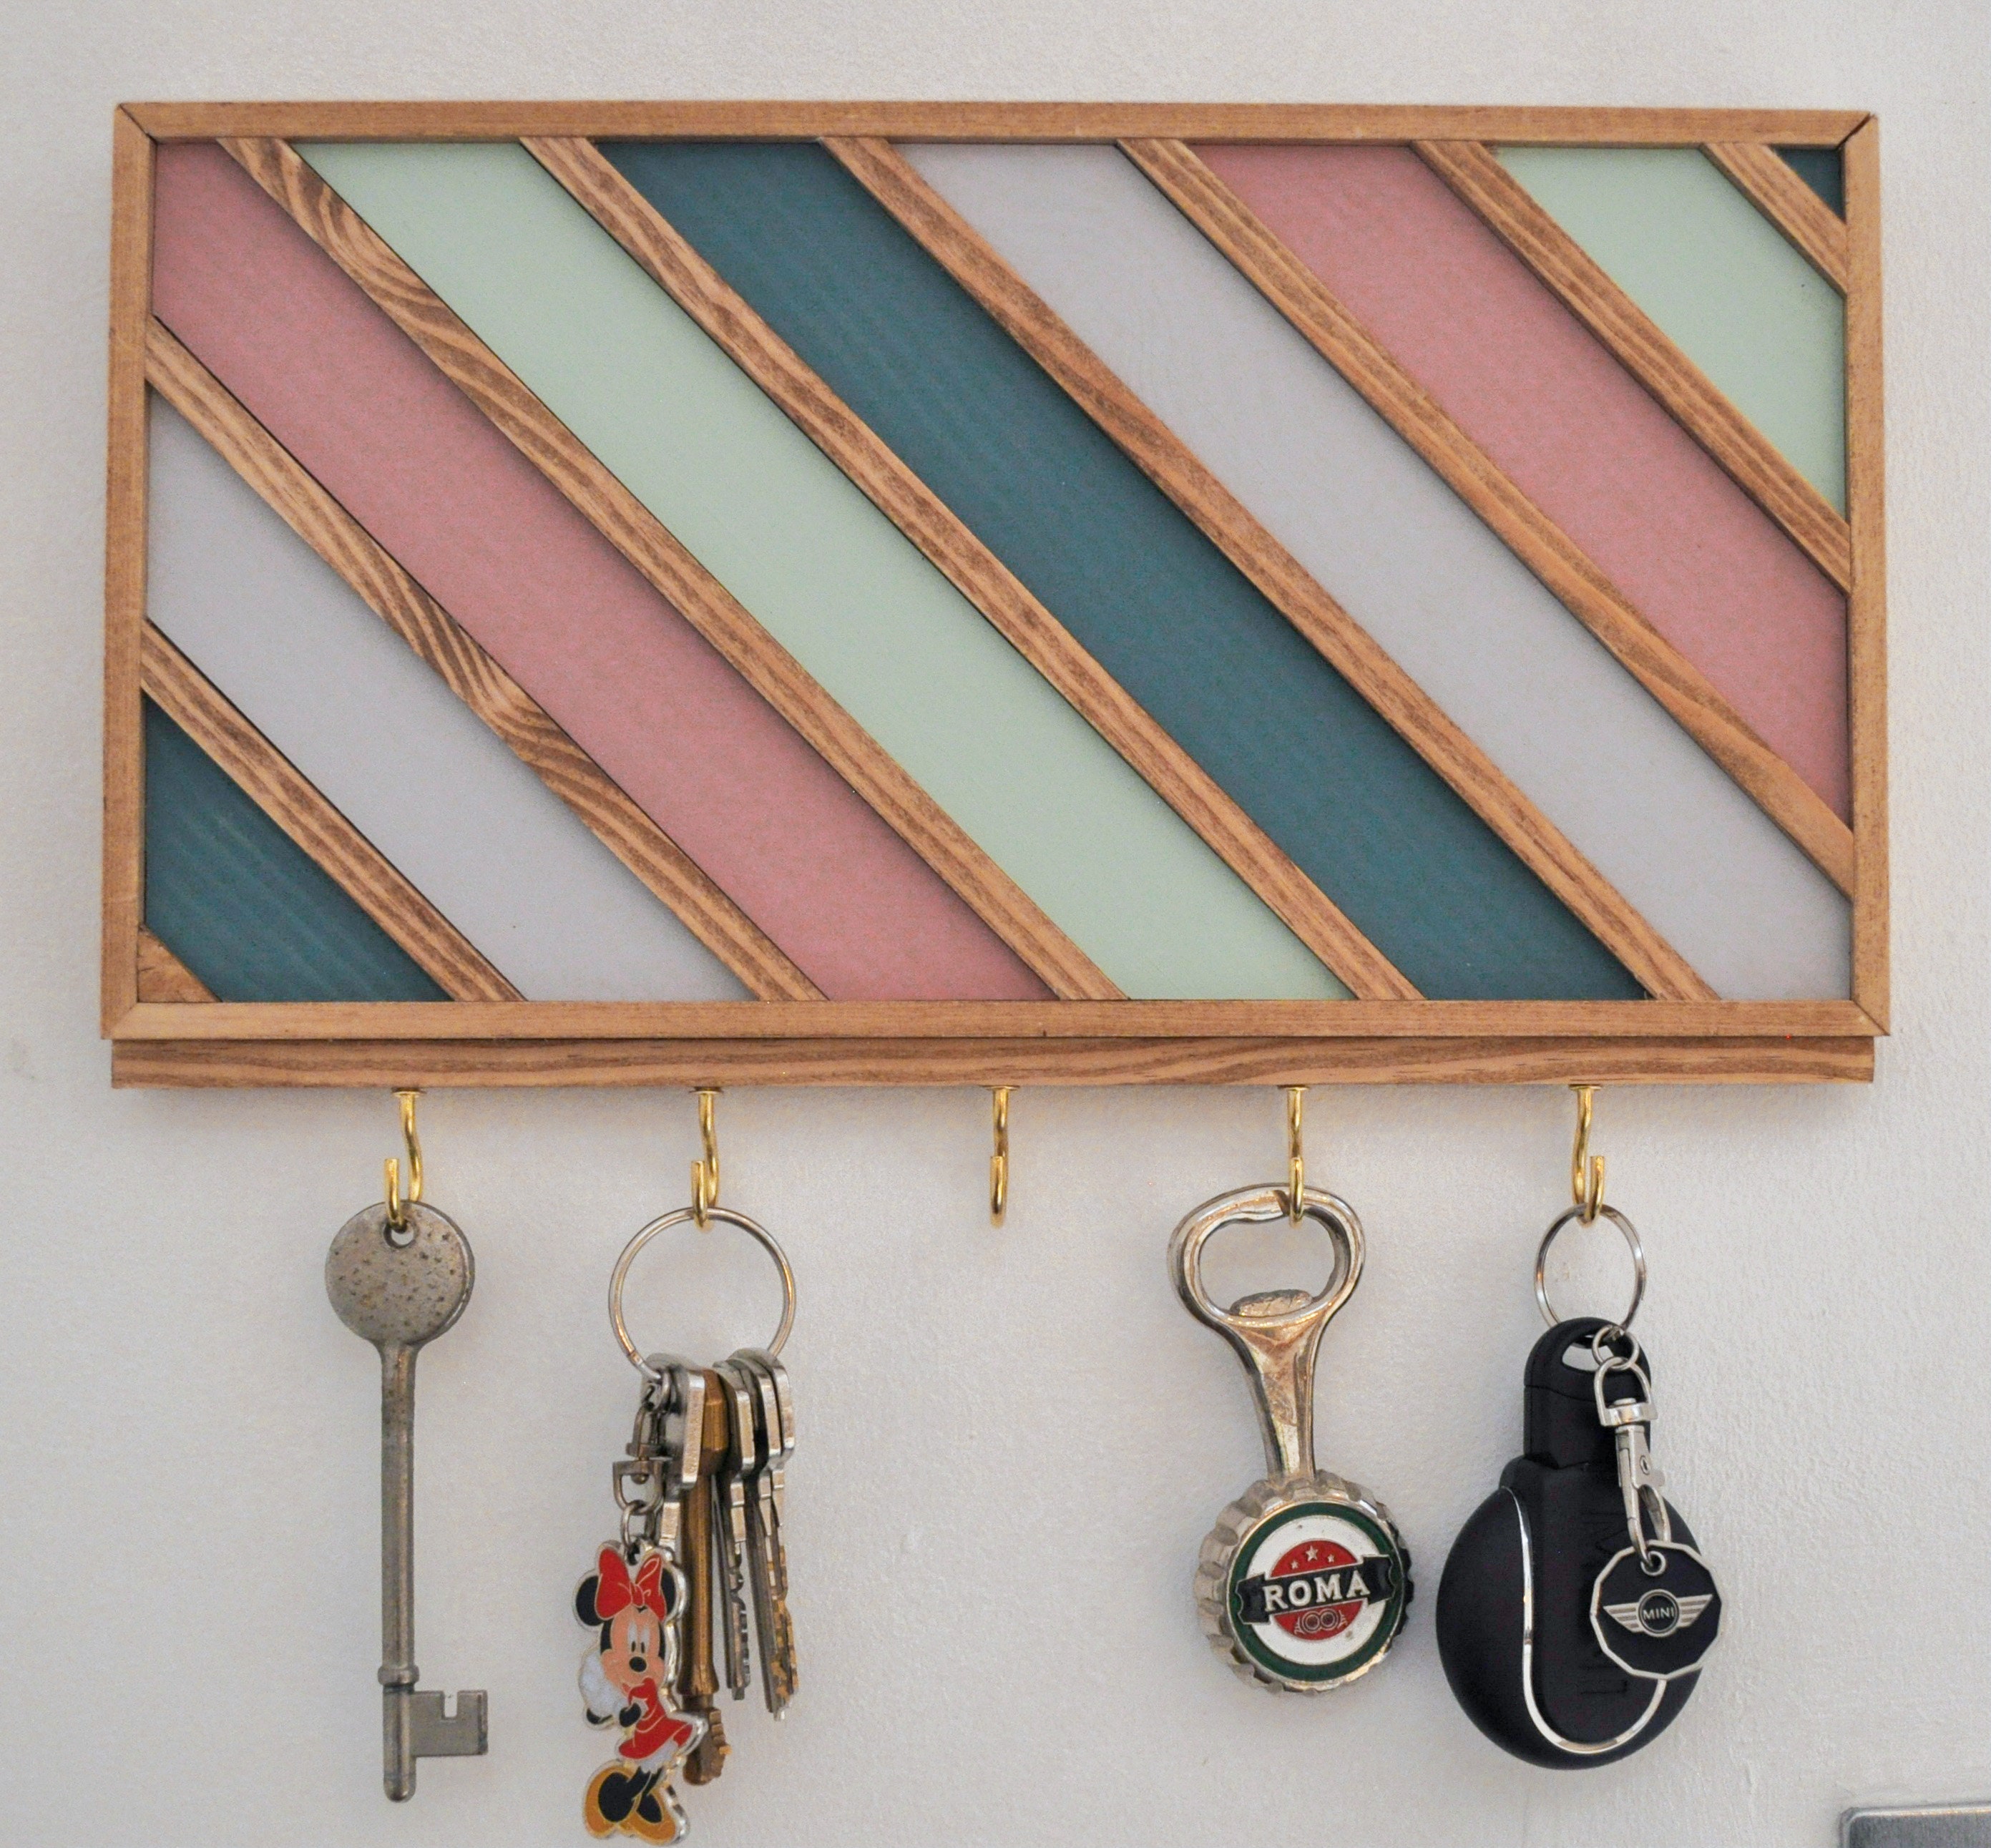 Colgador de llaves de madera con 6 ganchos, cuelga llaves de pared, soporte,  organizador de llaveros, entrada, salón